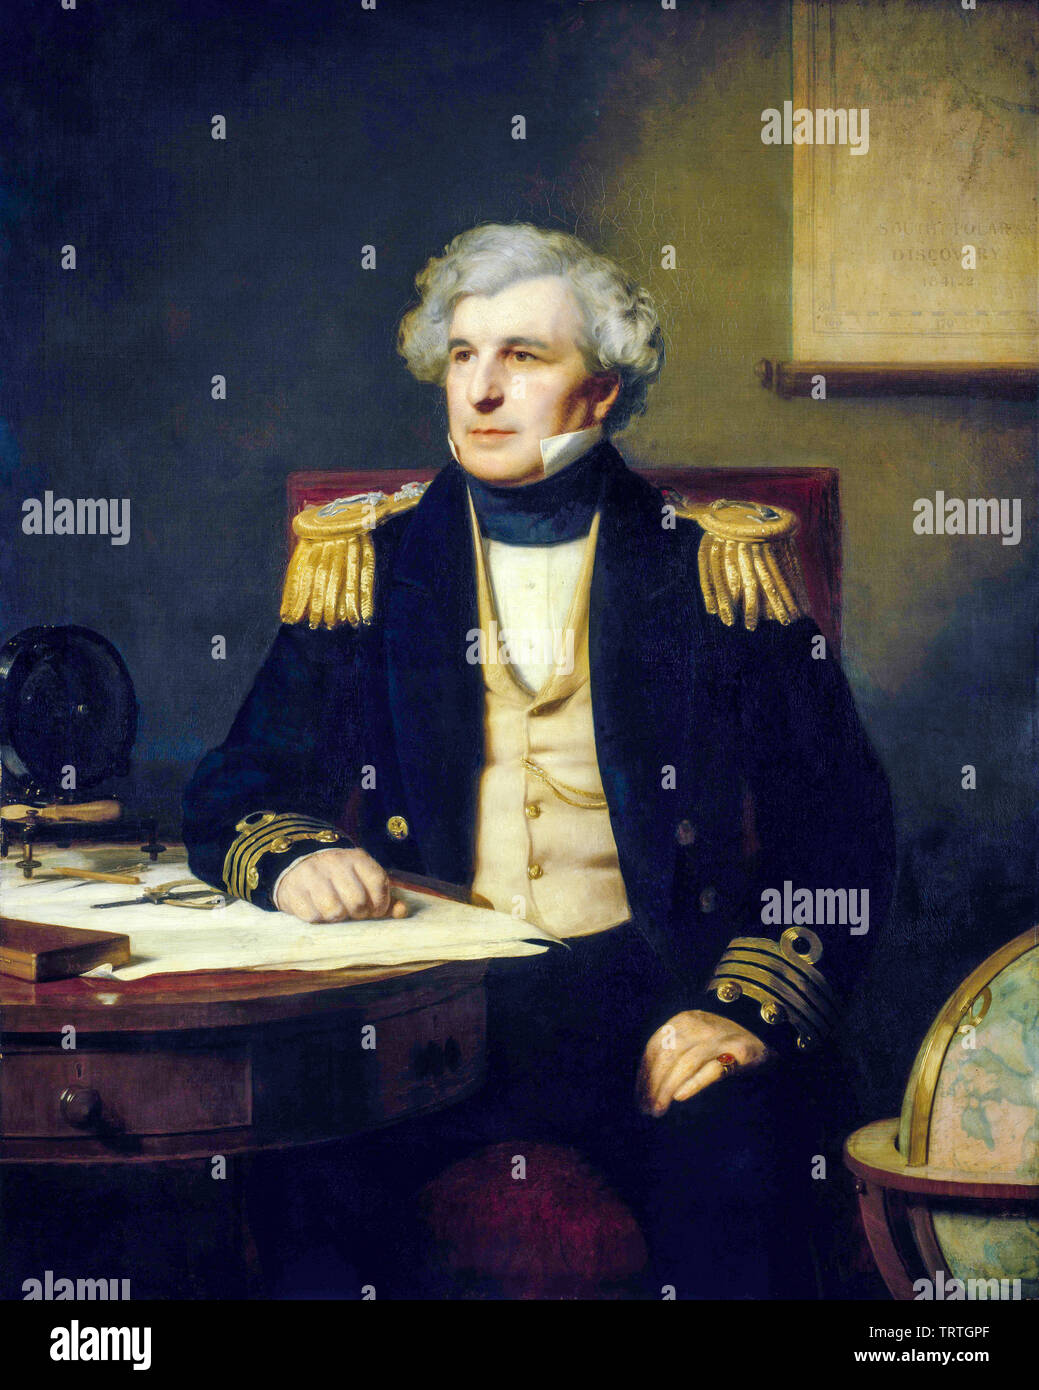 Capitaine Sir James Clark Ross, 1800-1862, portrait peint par Stephen Pearce, 1871 Banque D'Images